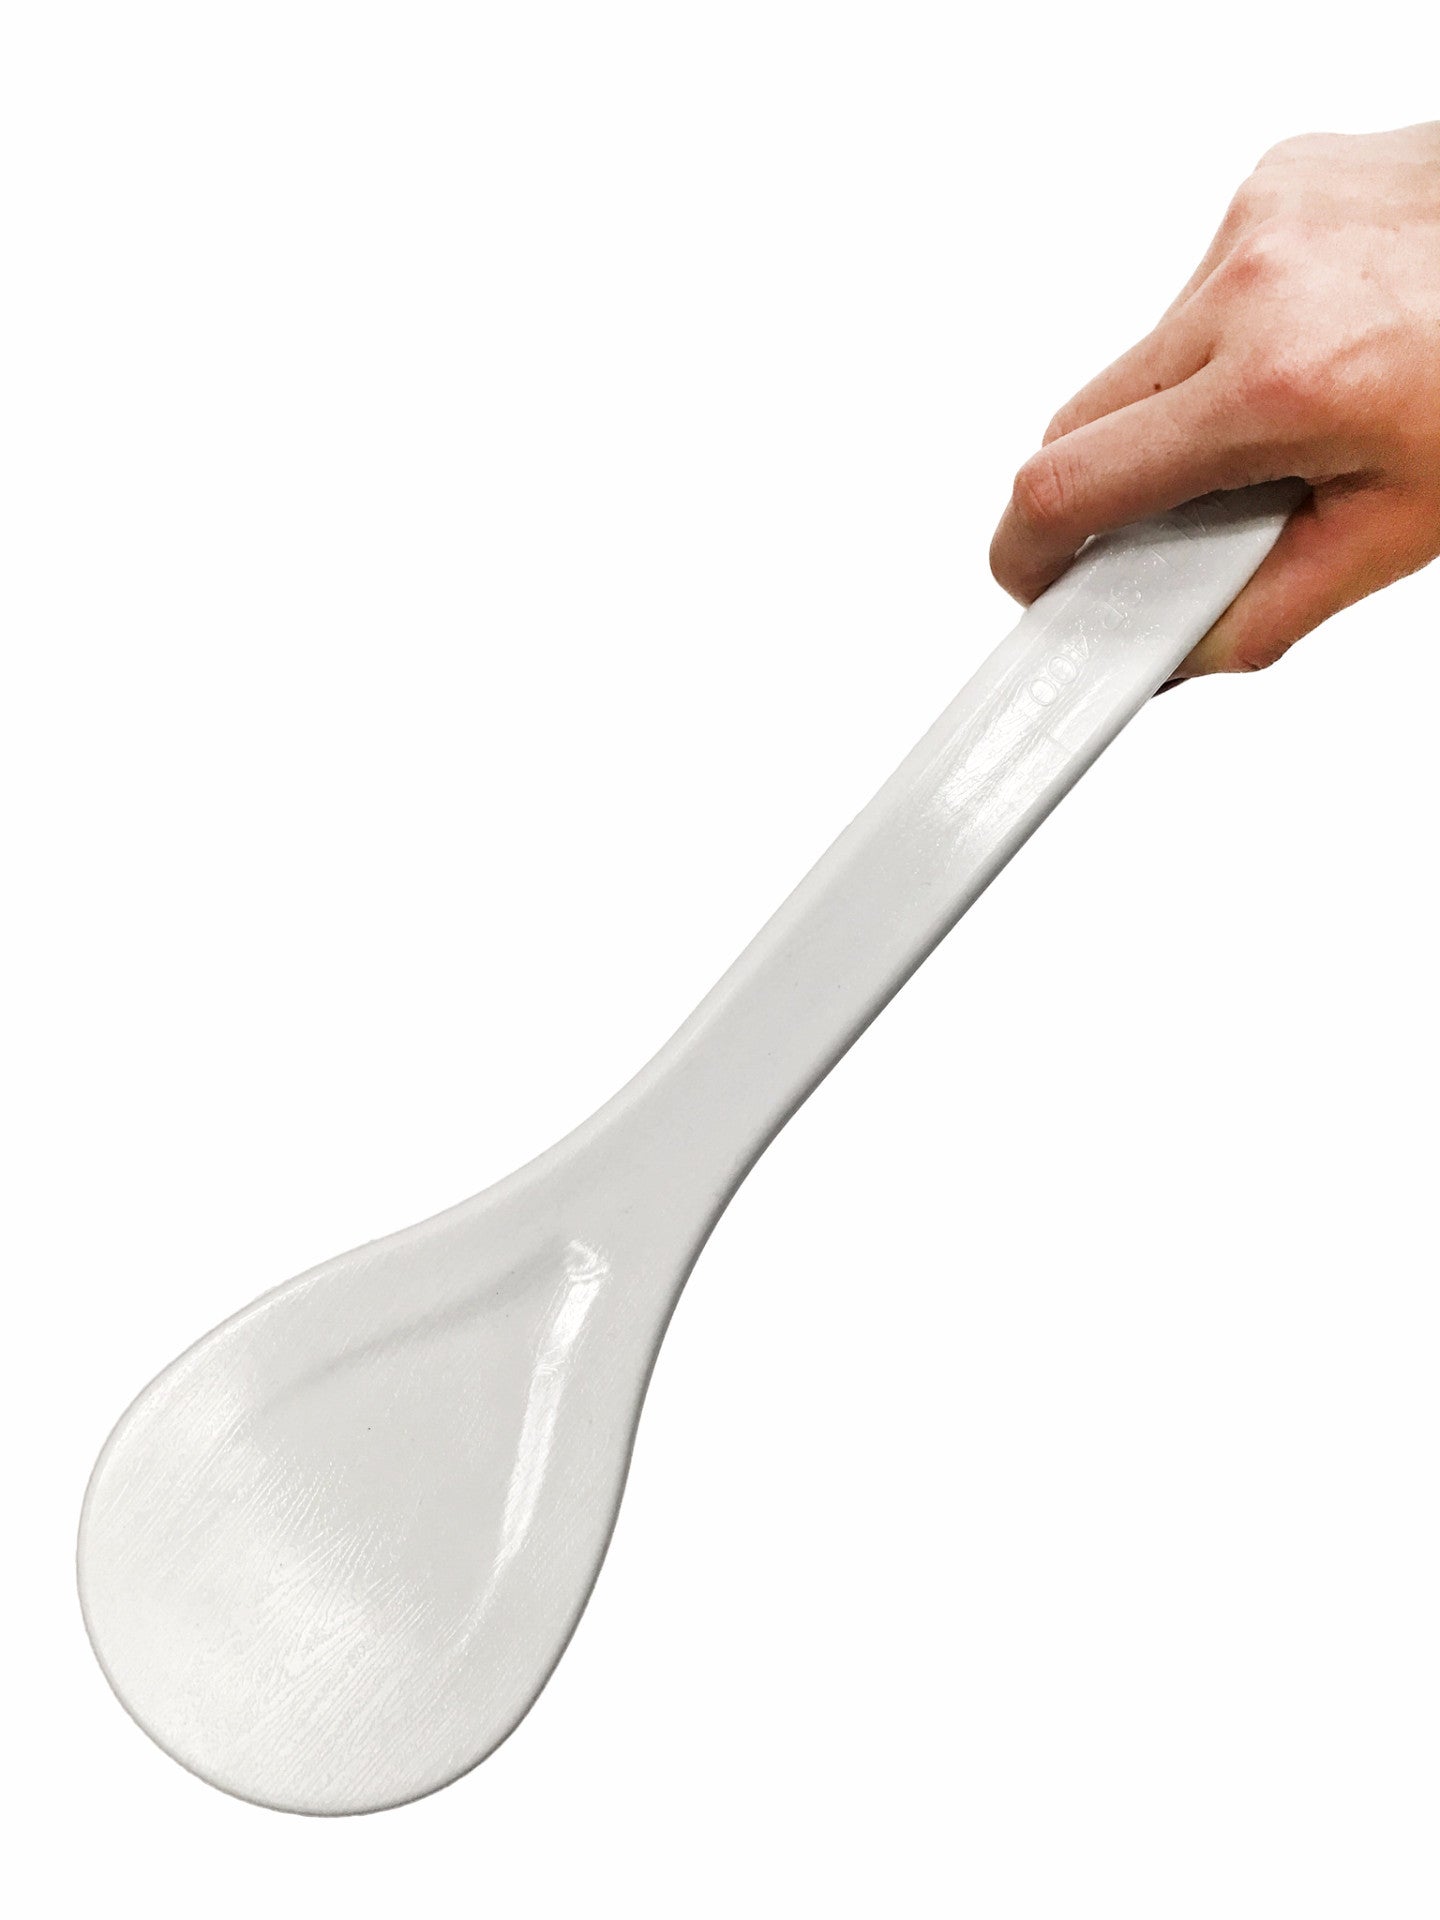 Plastic Rice Paddle Scoop (밥 주걱), Kitchen Tools - eKitchenary